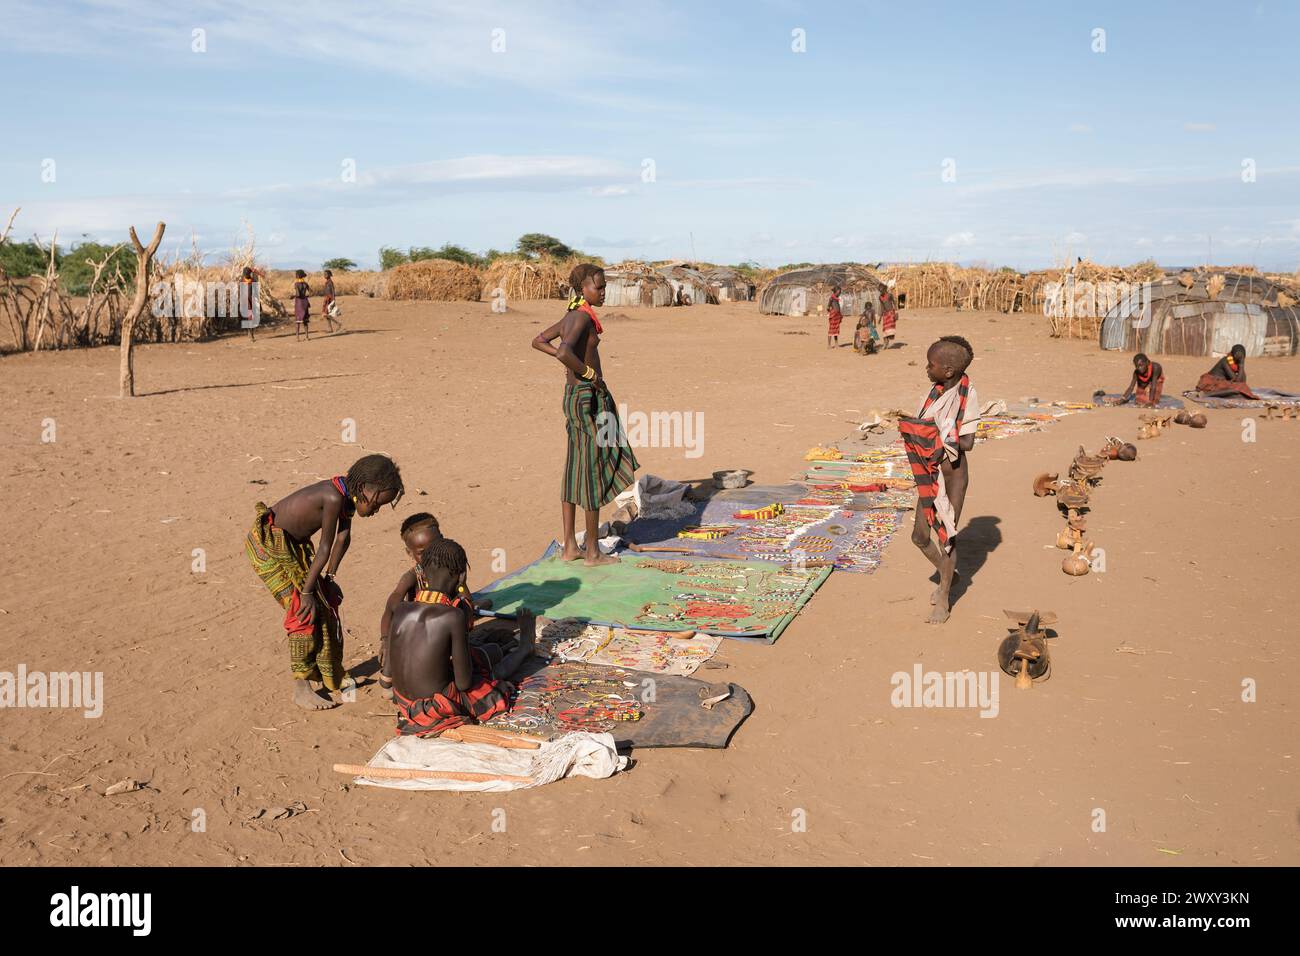 Omorate, Omo Valley, Ethiopie - 11 mai 2019 : des enfants de la tribu africaine Dasanesh offrent des souvenirs faits à la main. Daasanach sont des groupes ethniques cushitiques Banque D'Images